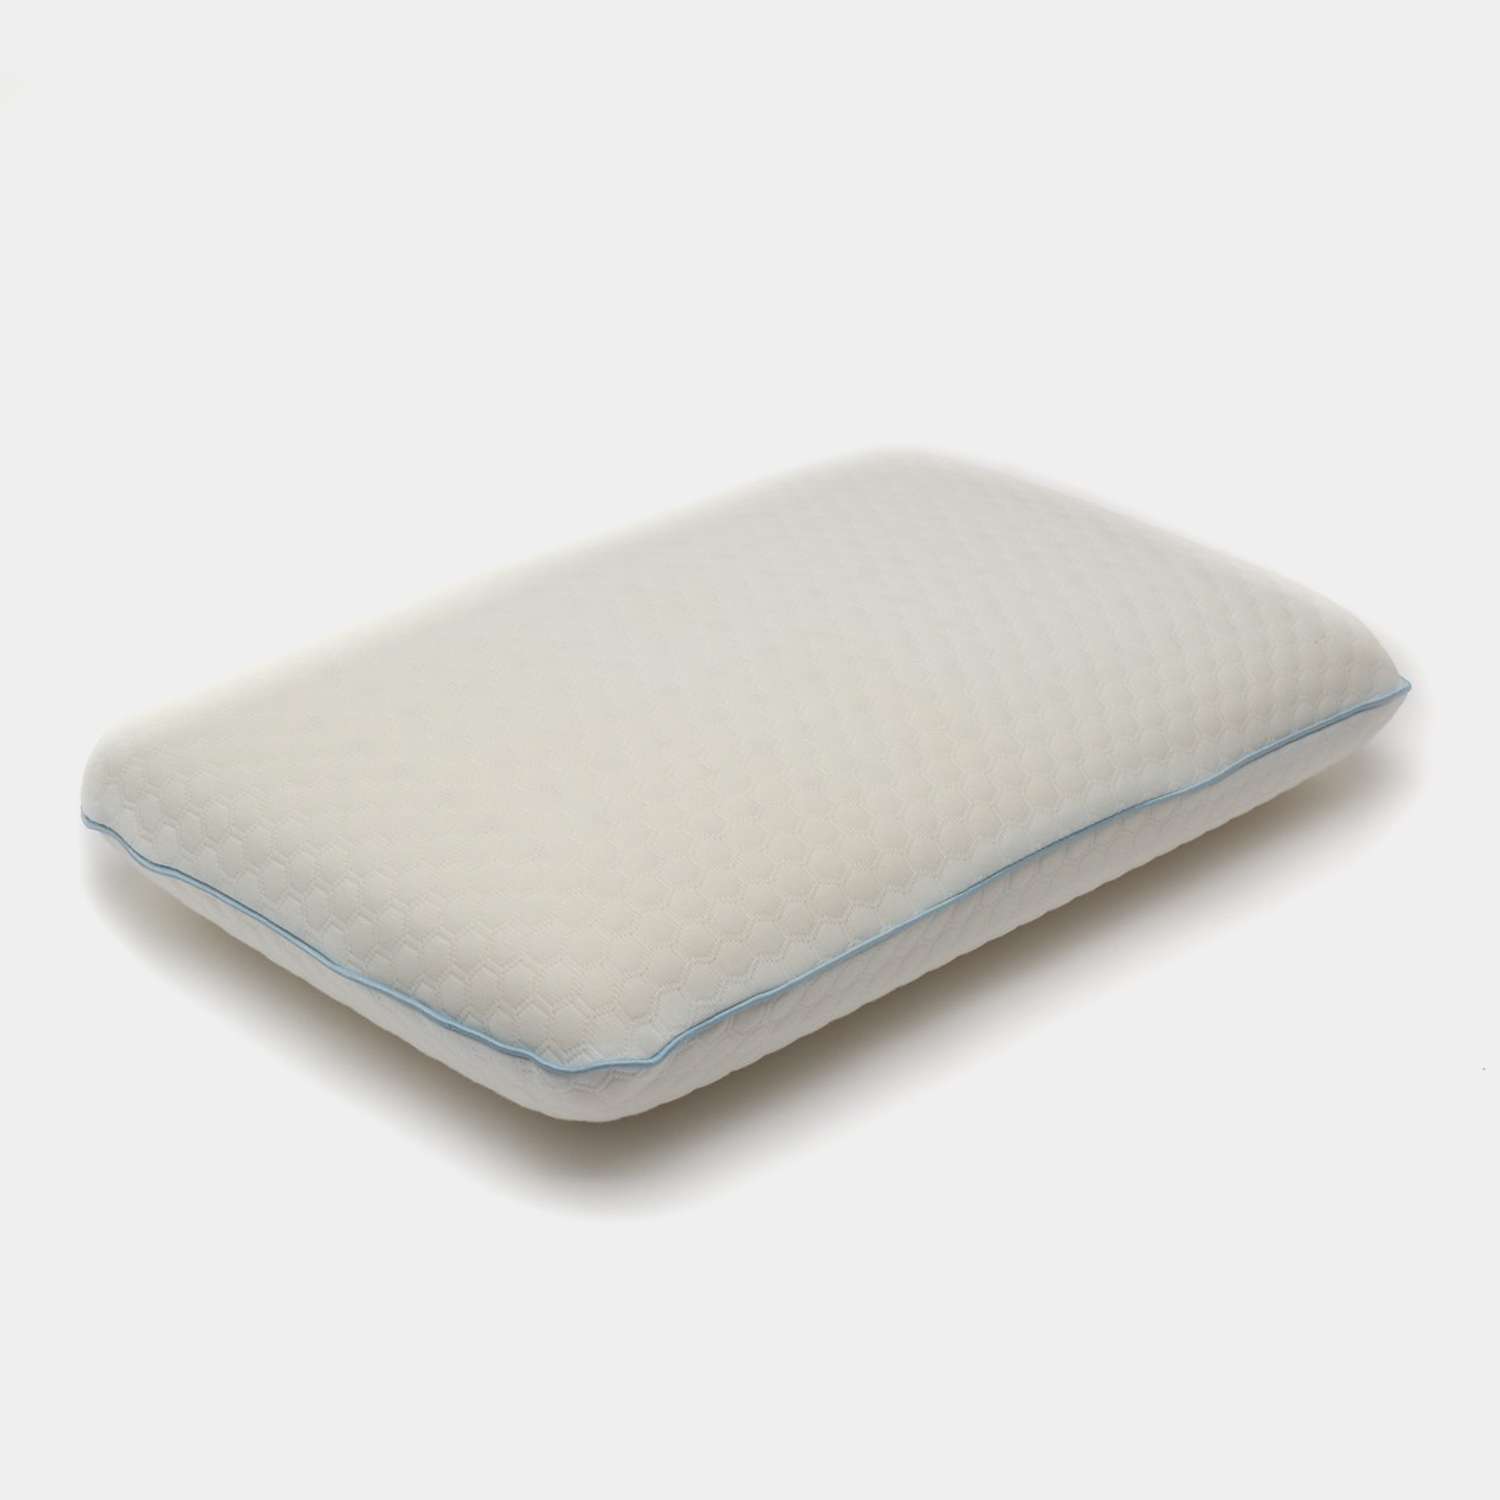 подушки для сна Comfort Expert Ортопедическая Анатомическая подушка Классической формы высота 12 см - фото 1